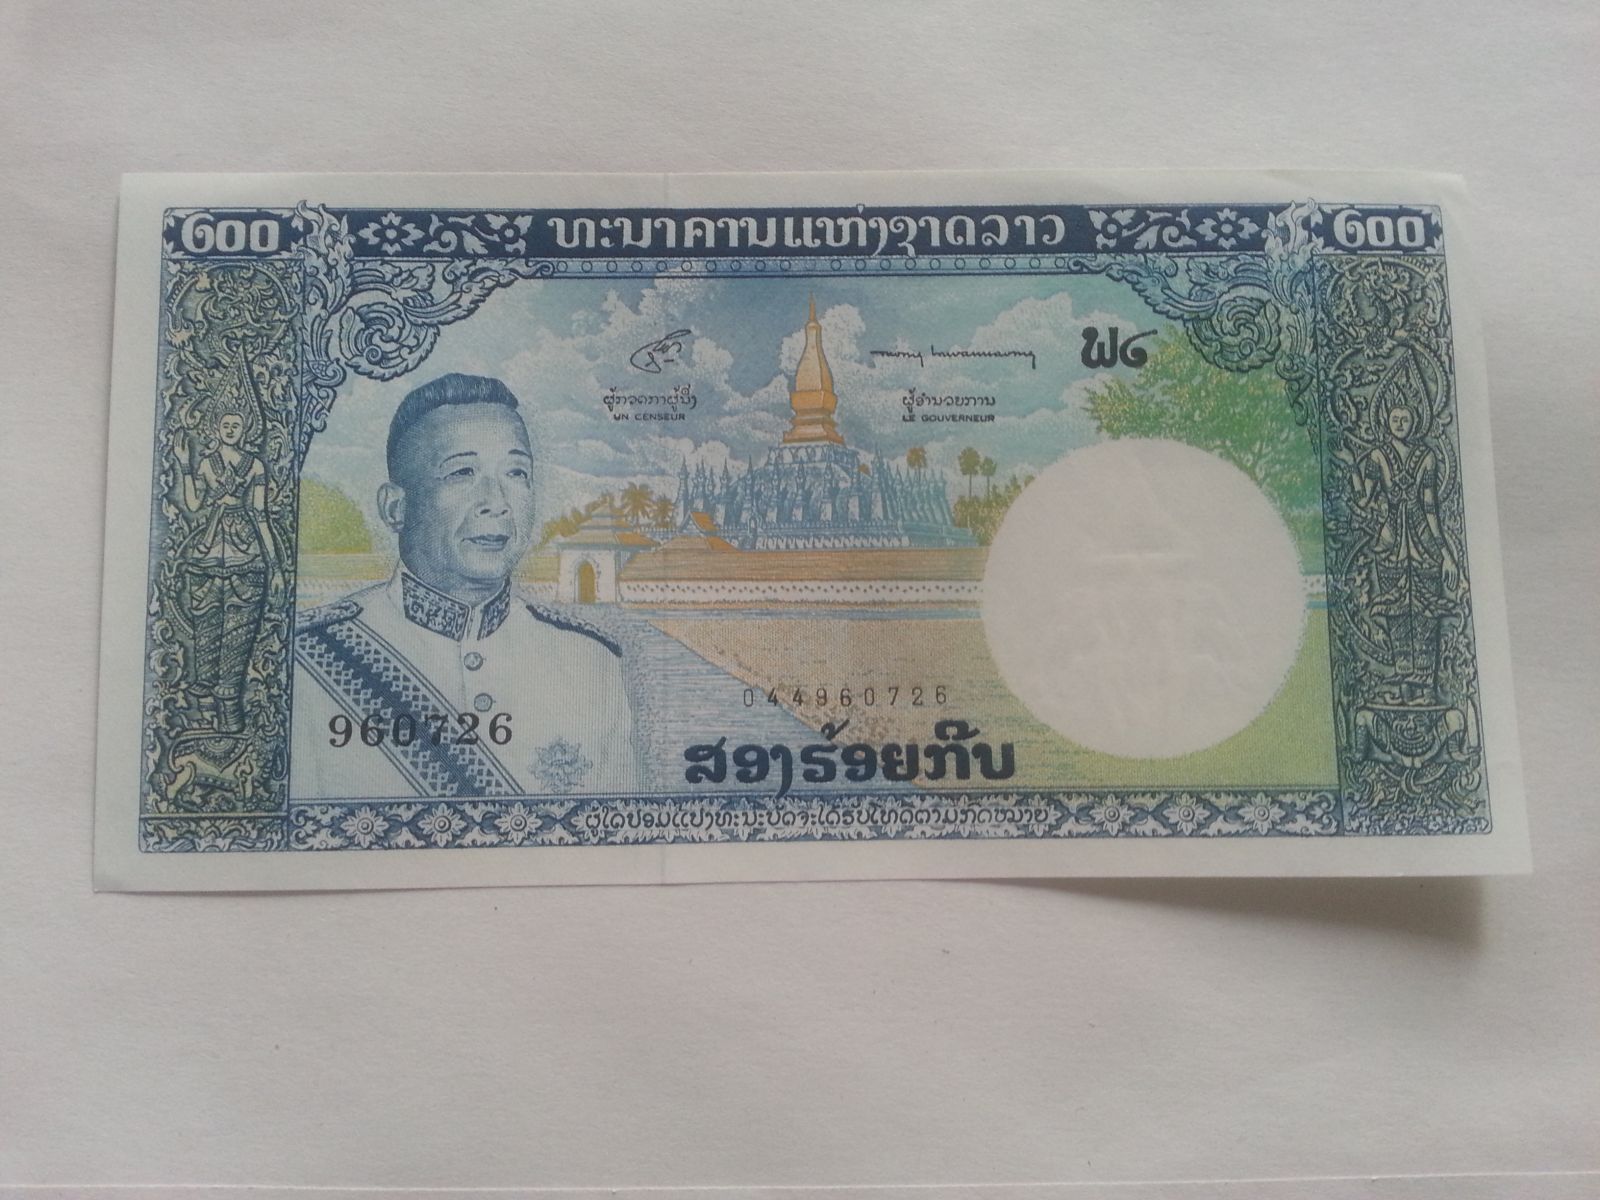 200 Kip, královský palác, Laos